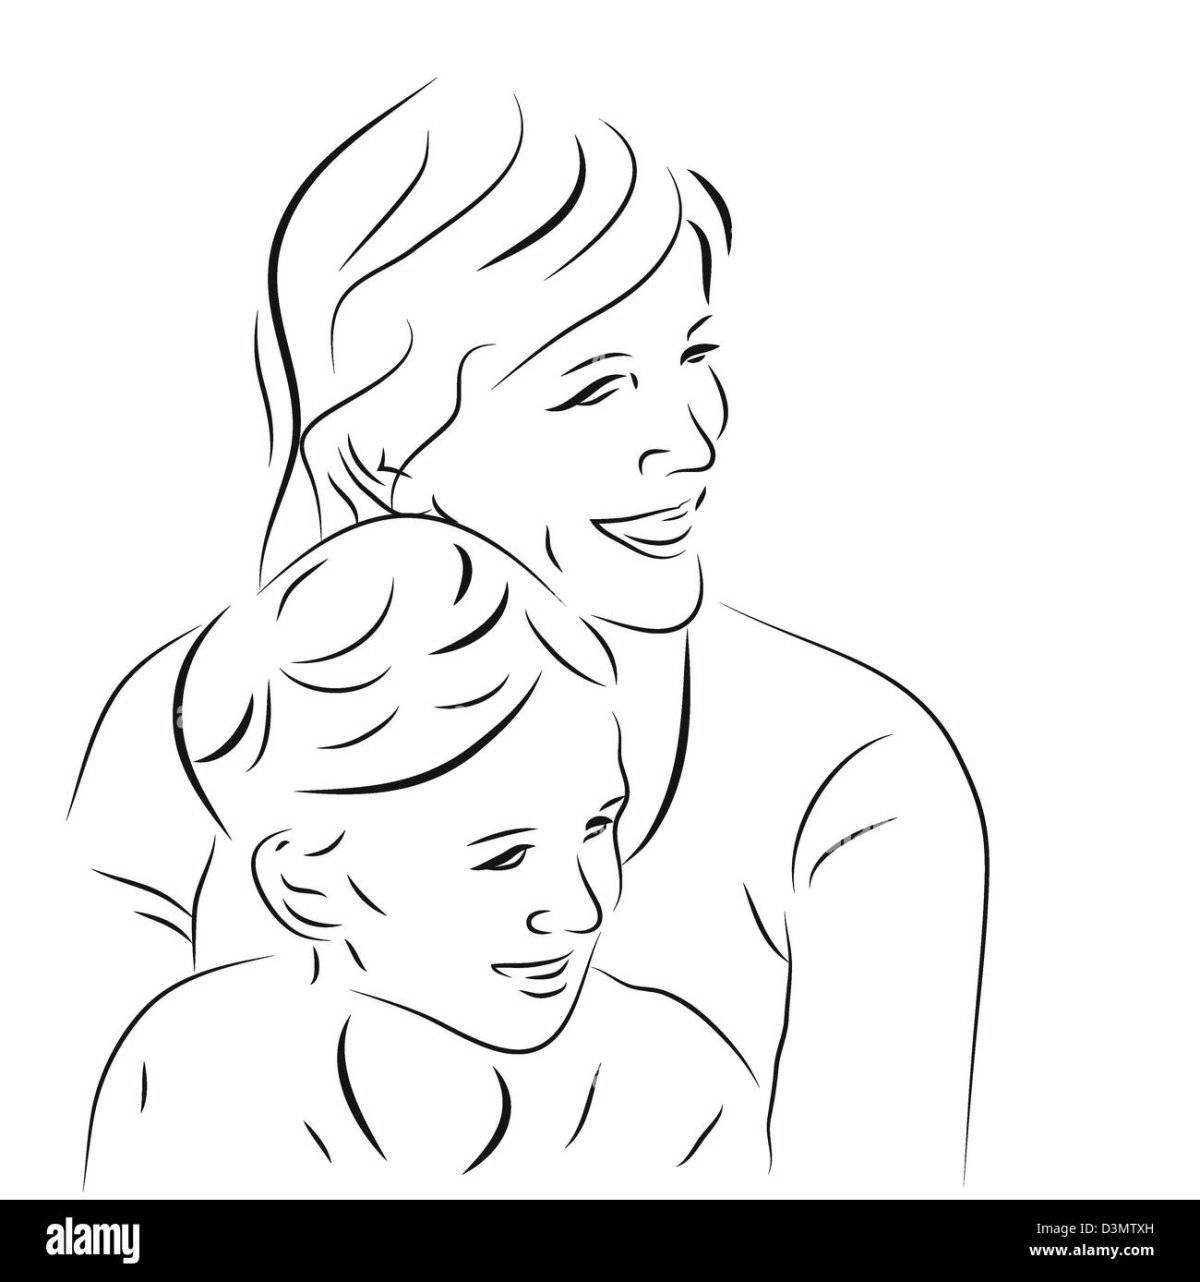 Радостная раскраска «мама и мальчик»